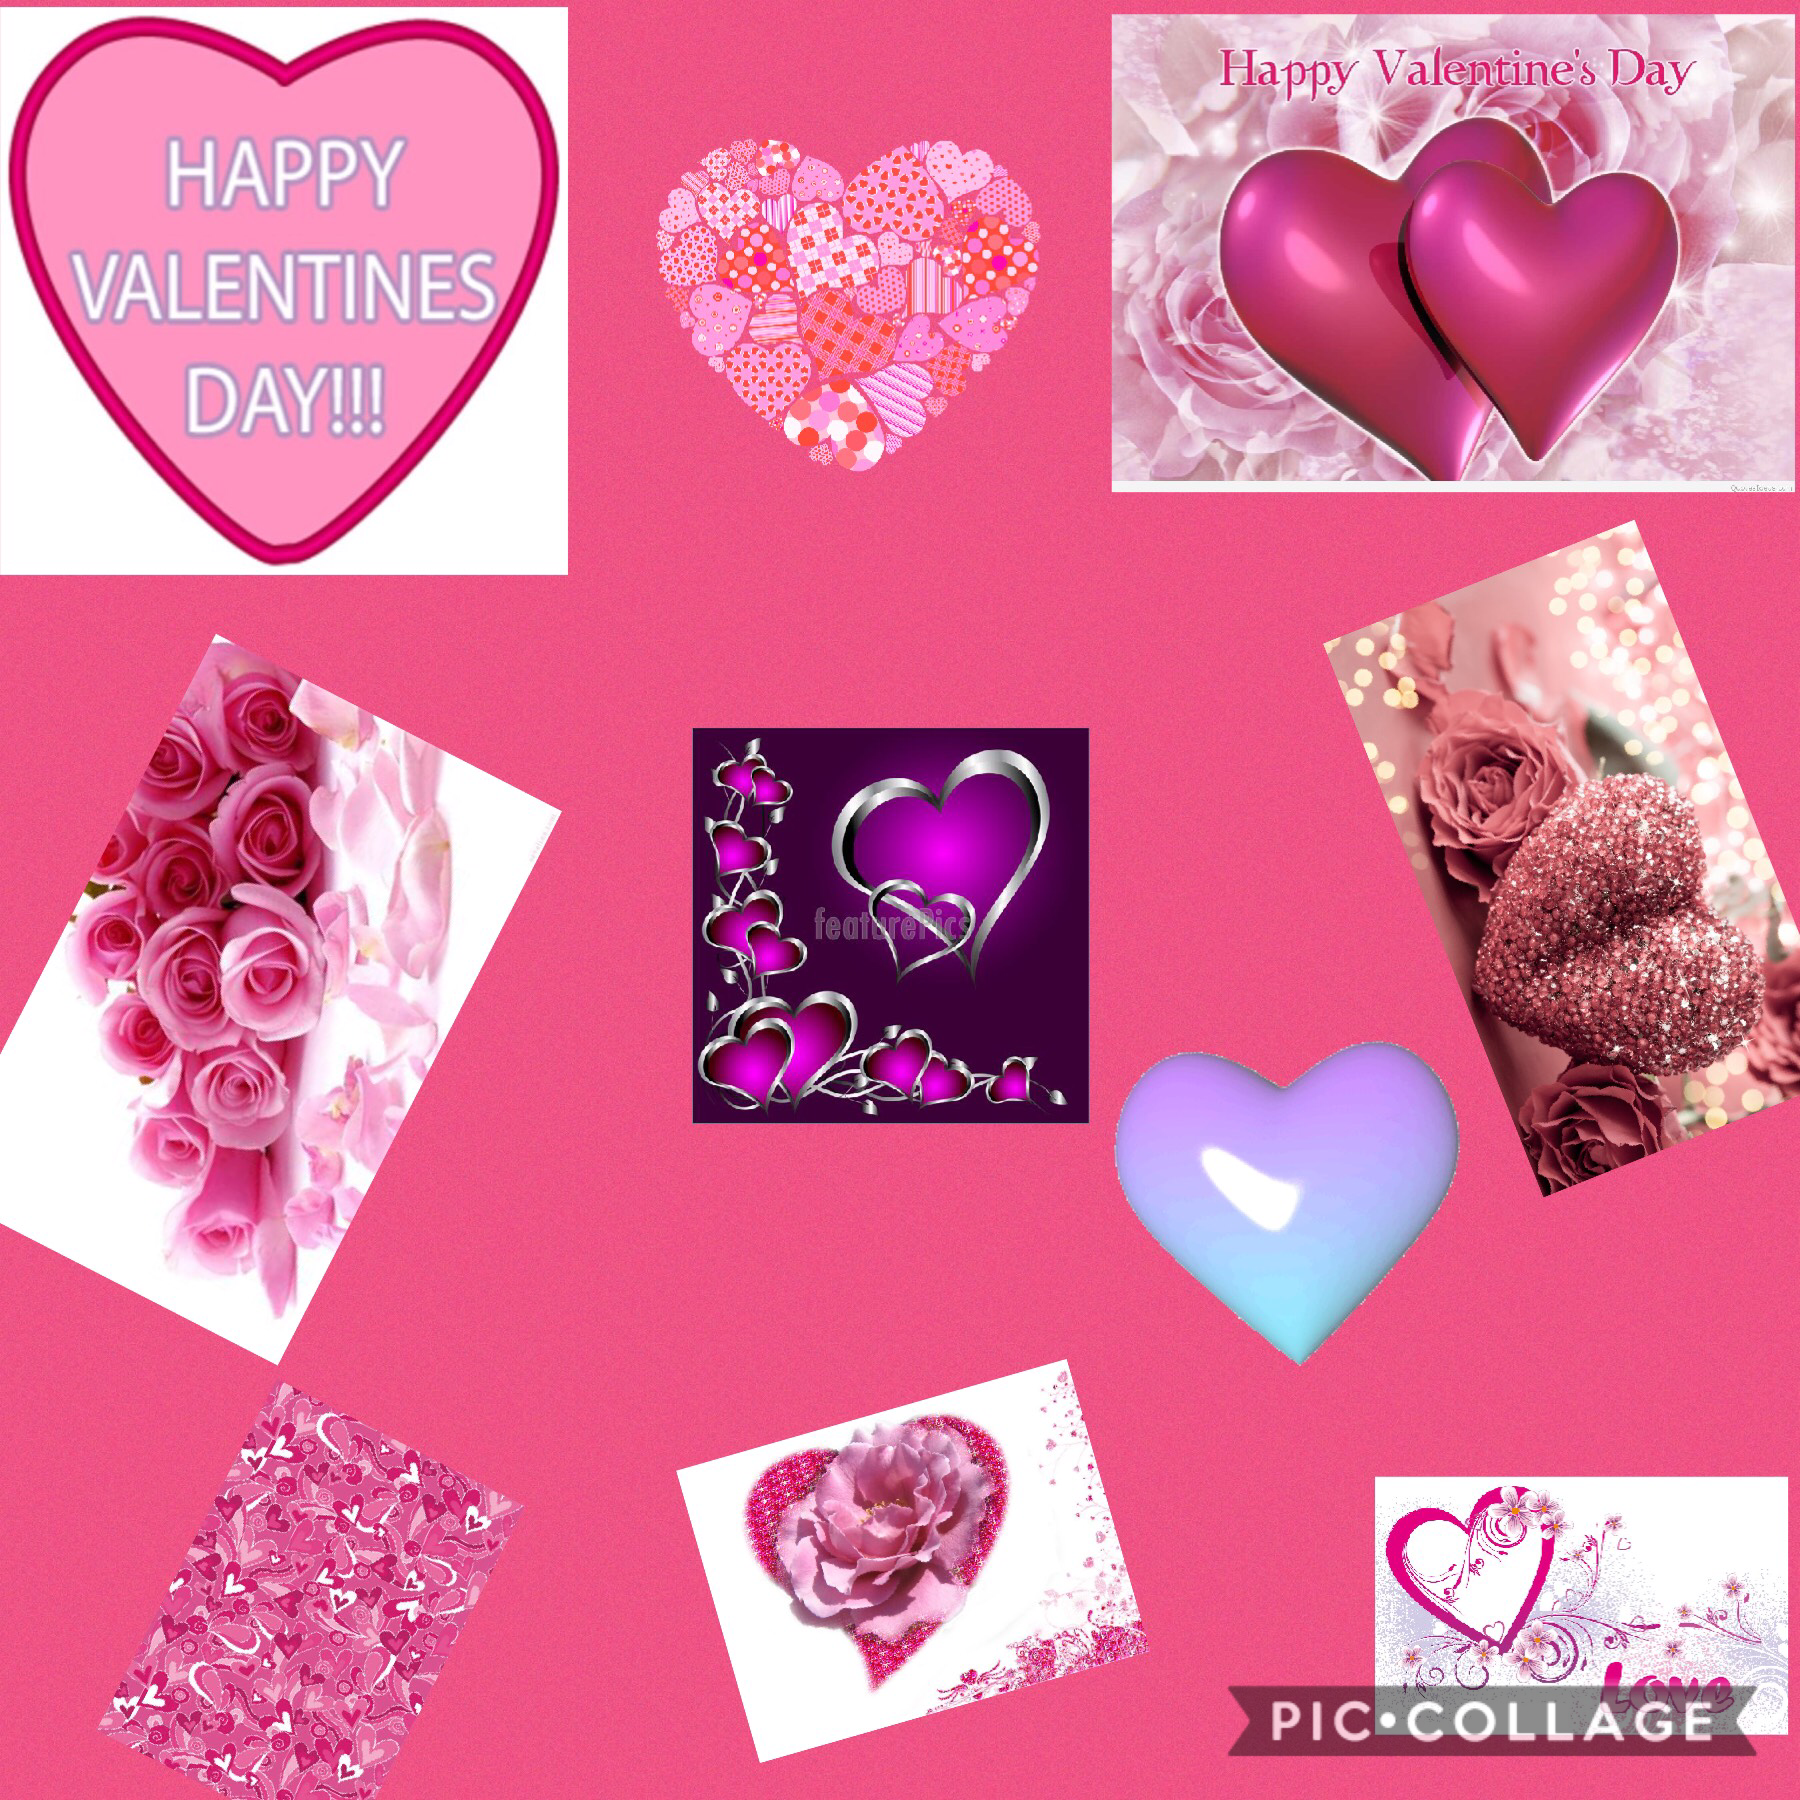 Happy Valentine’s Day 